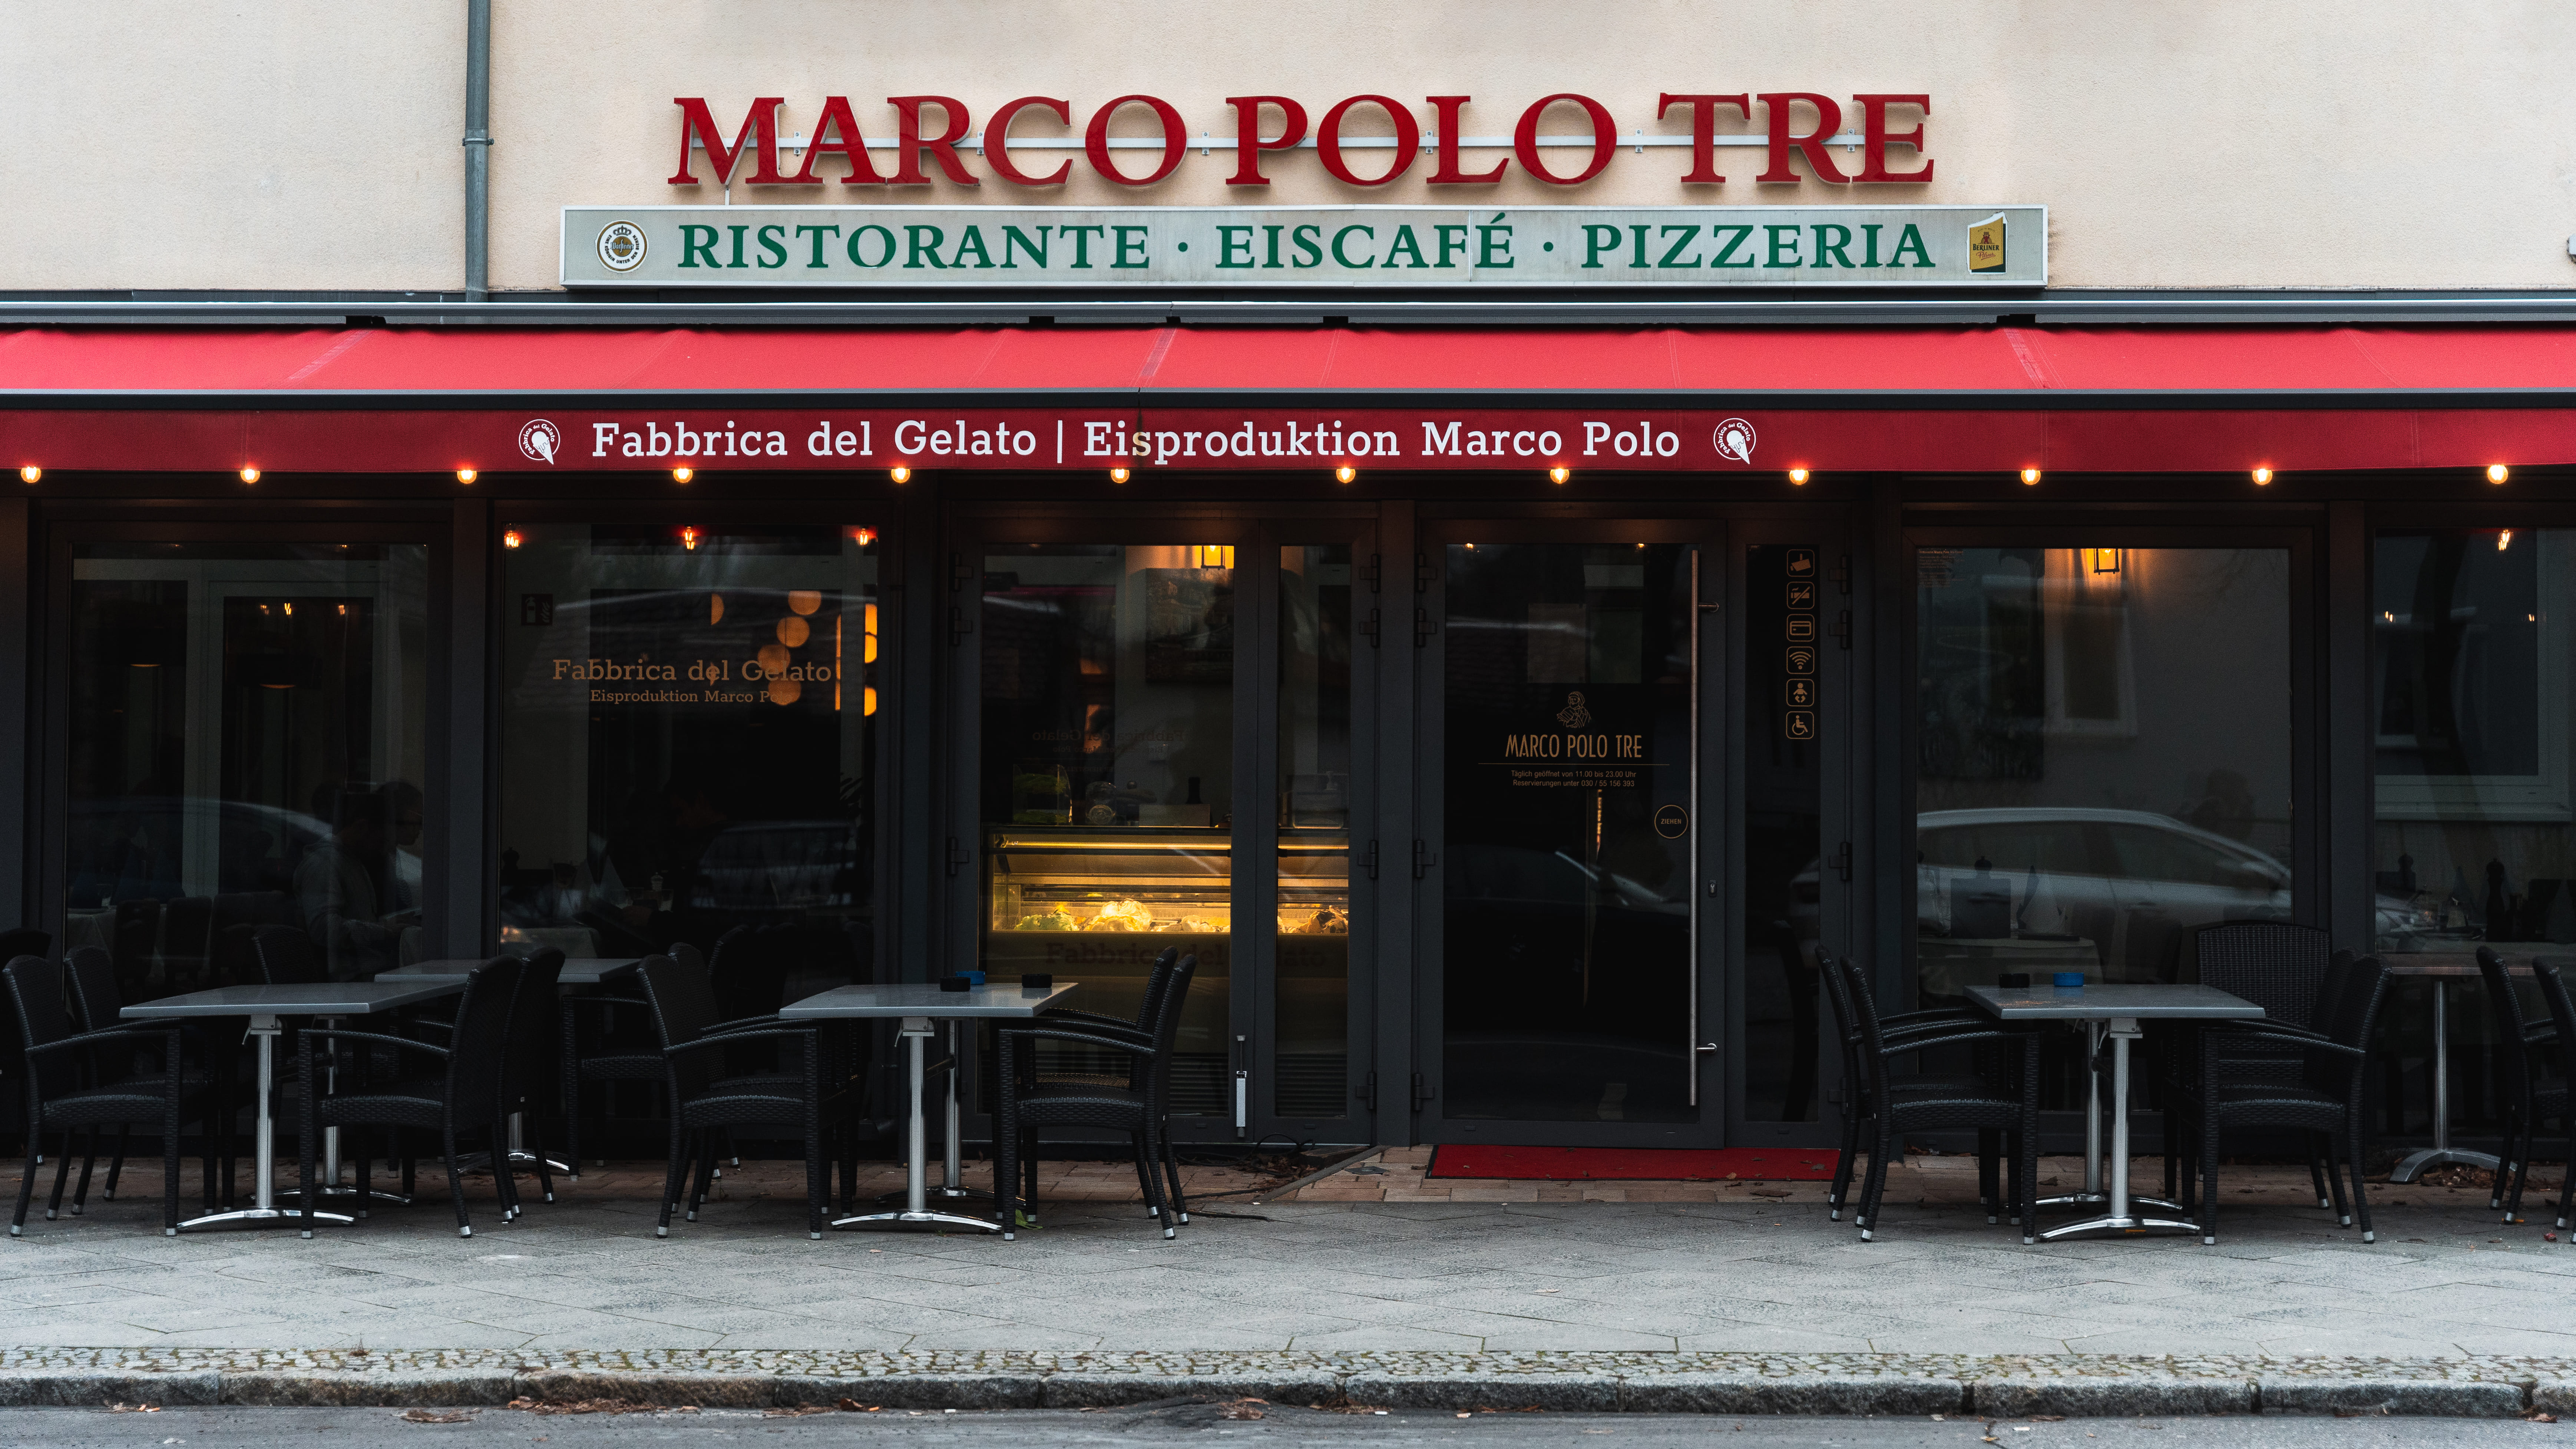 Bild 1 Marco Polo Tre in Berlin